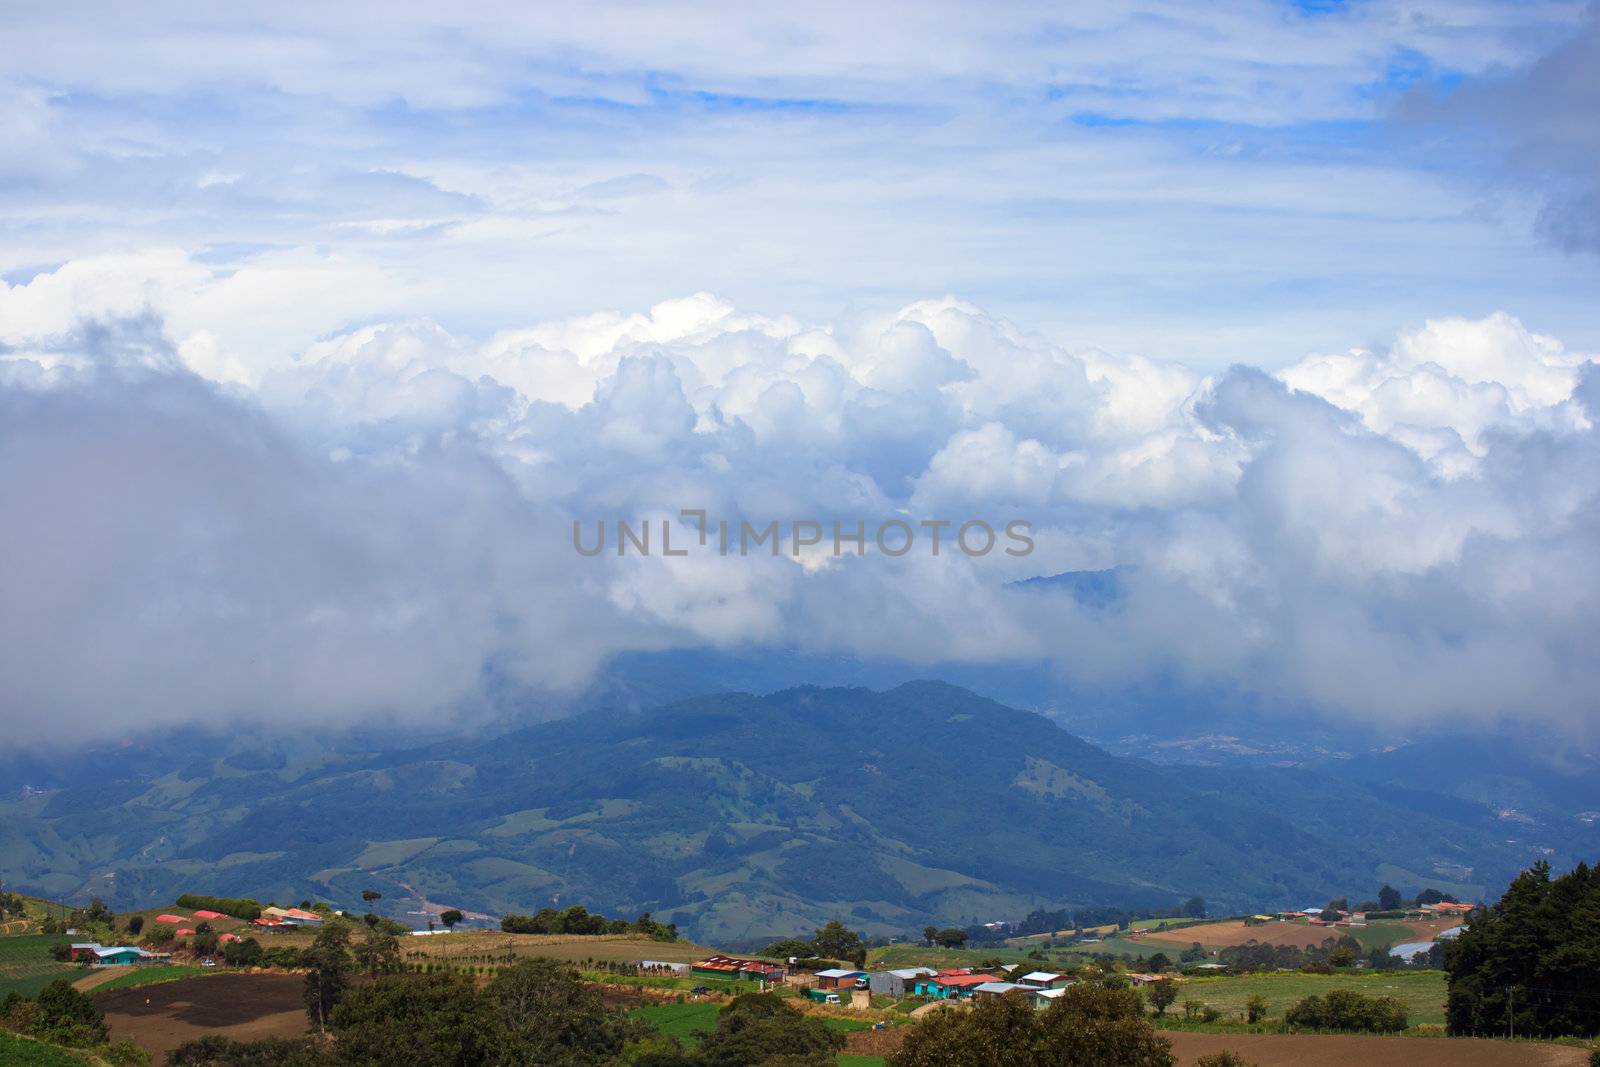 Mountain village in Irazu, Costa Rica